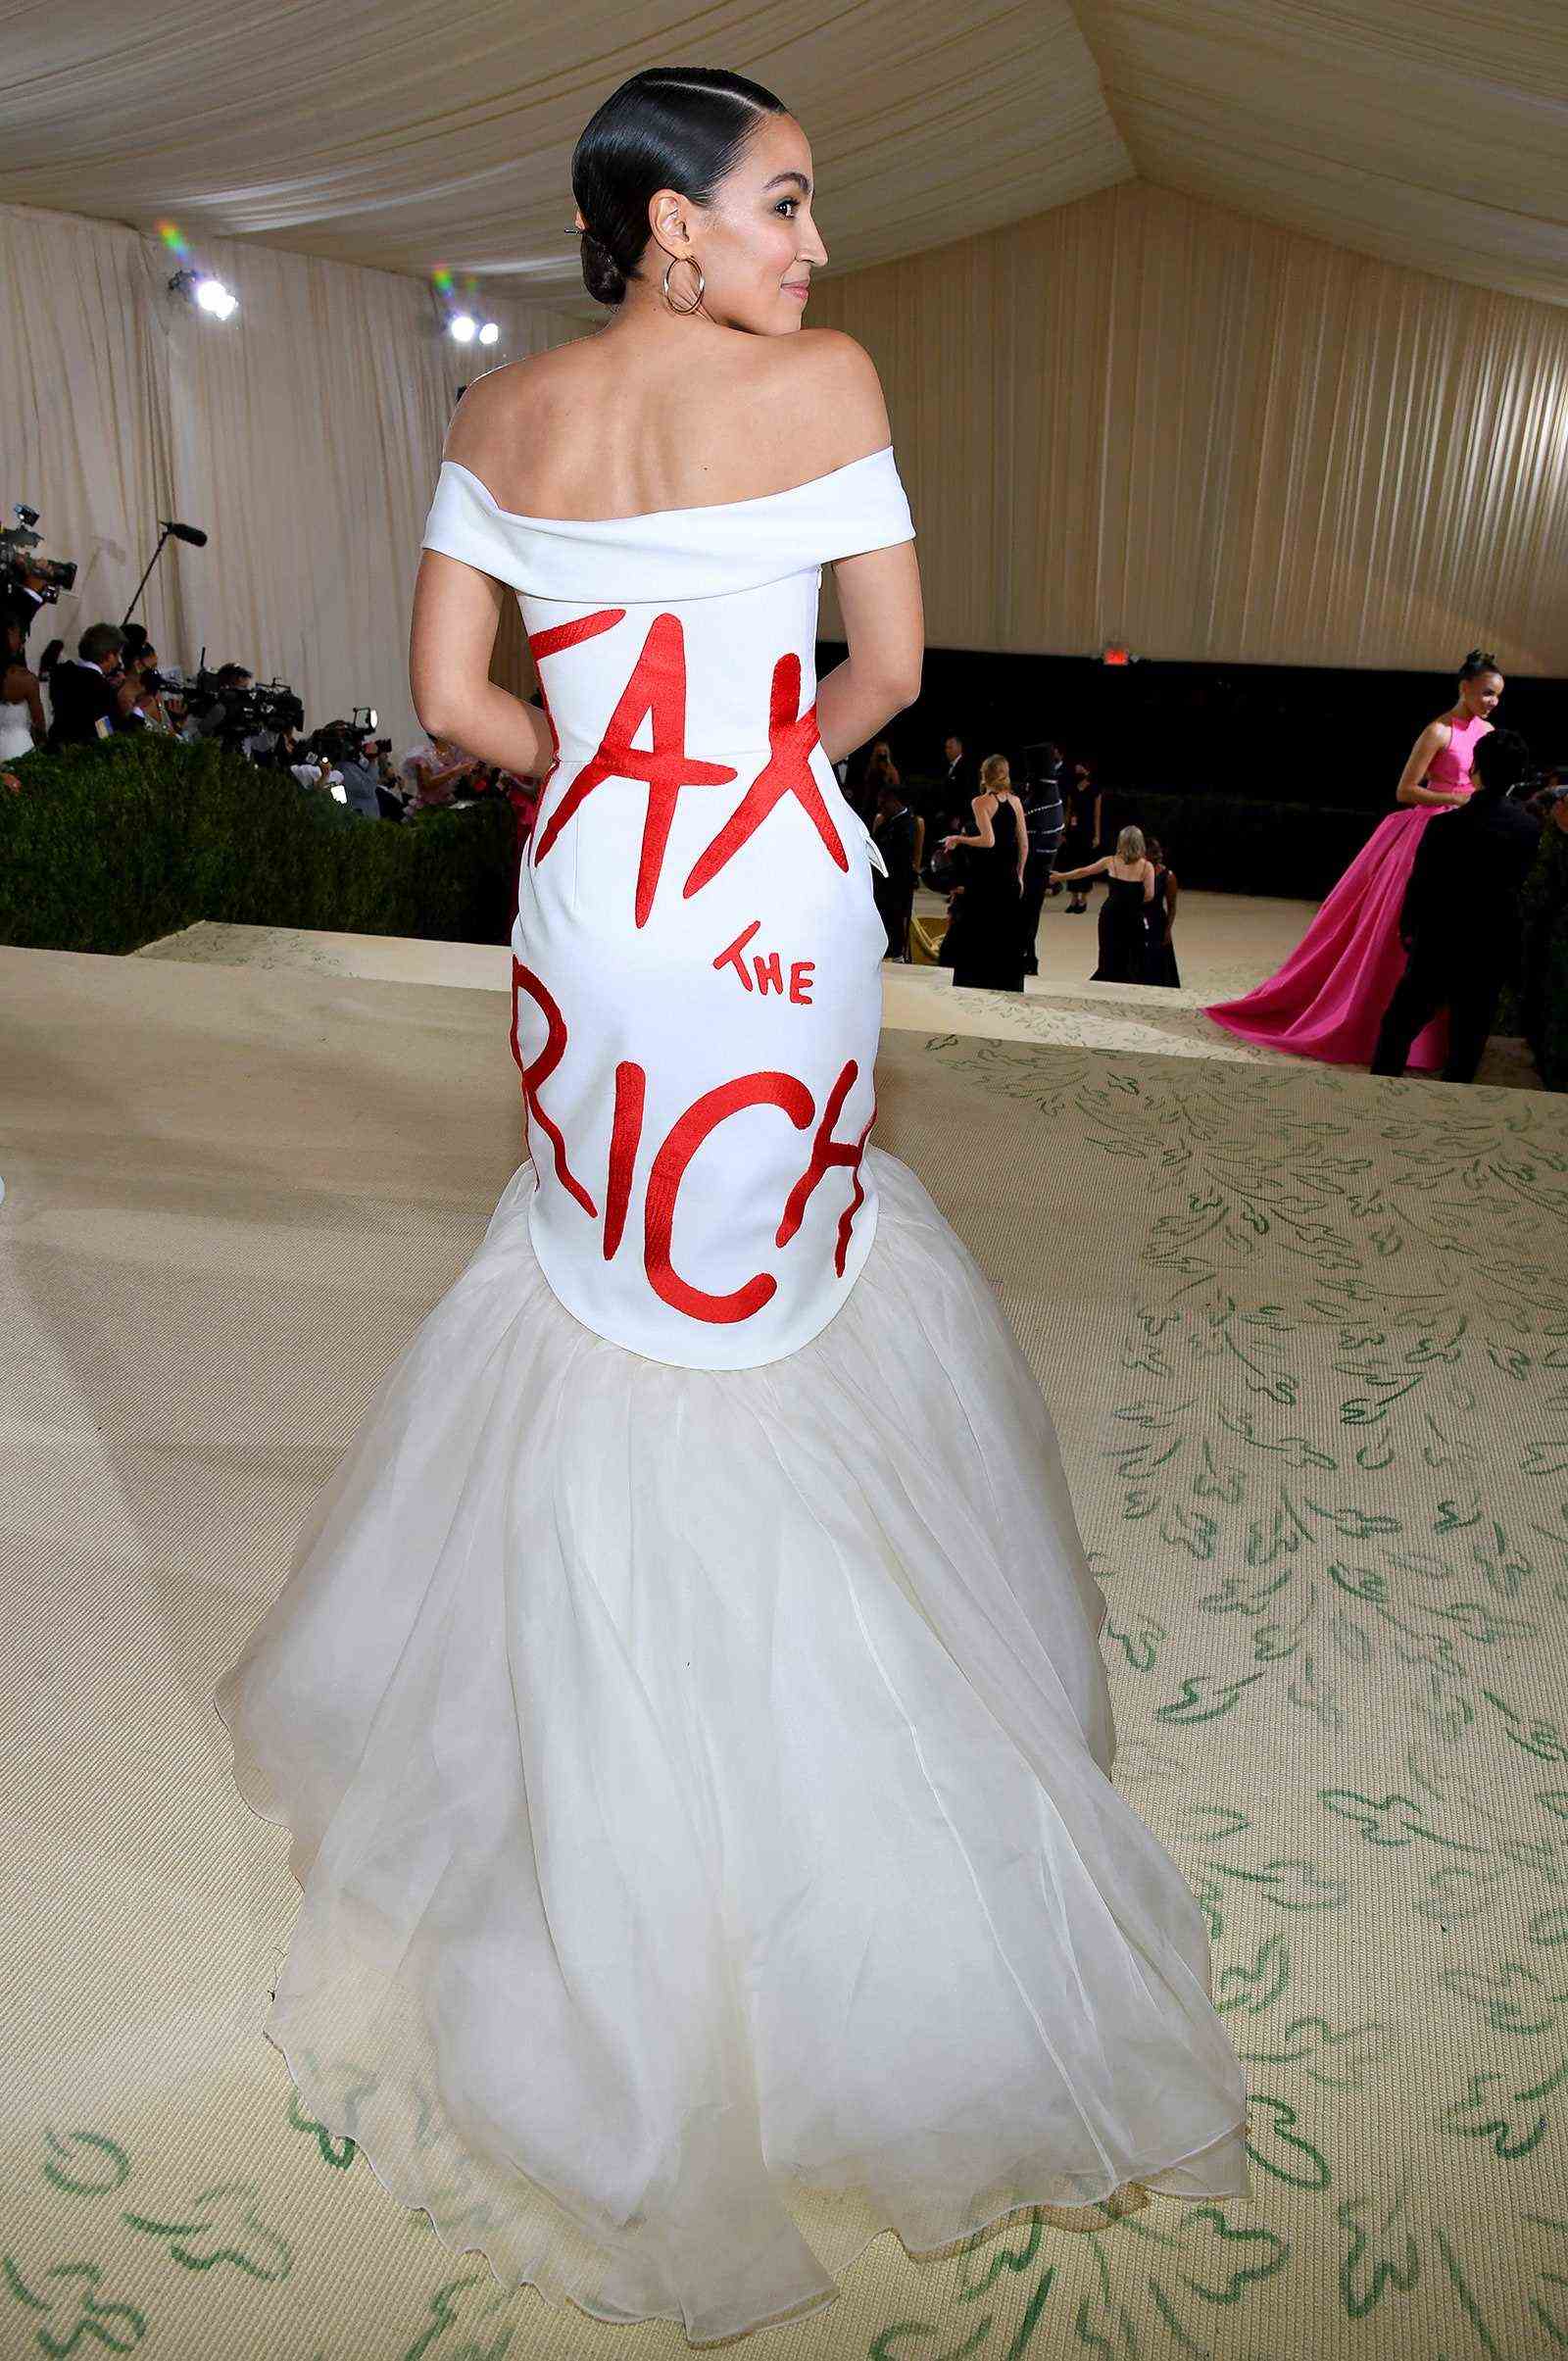 Alexandria OcasioCortez nimmt an der Met Gala 2021 in einem weißen Kleid teil, auf dem auf der Rückseite 